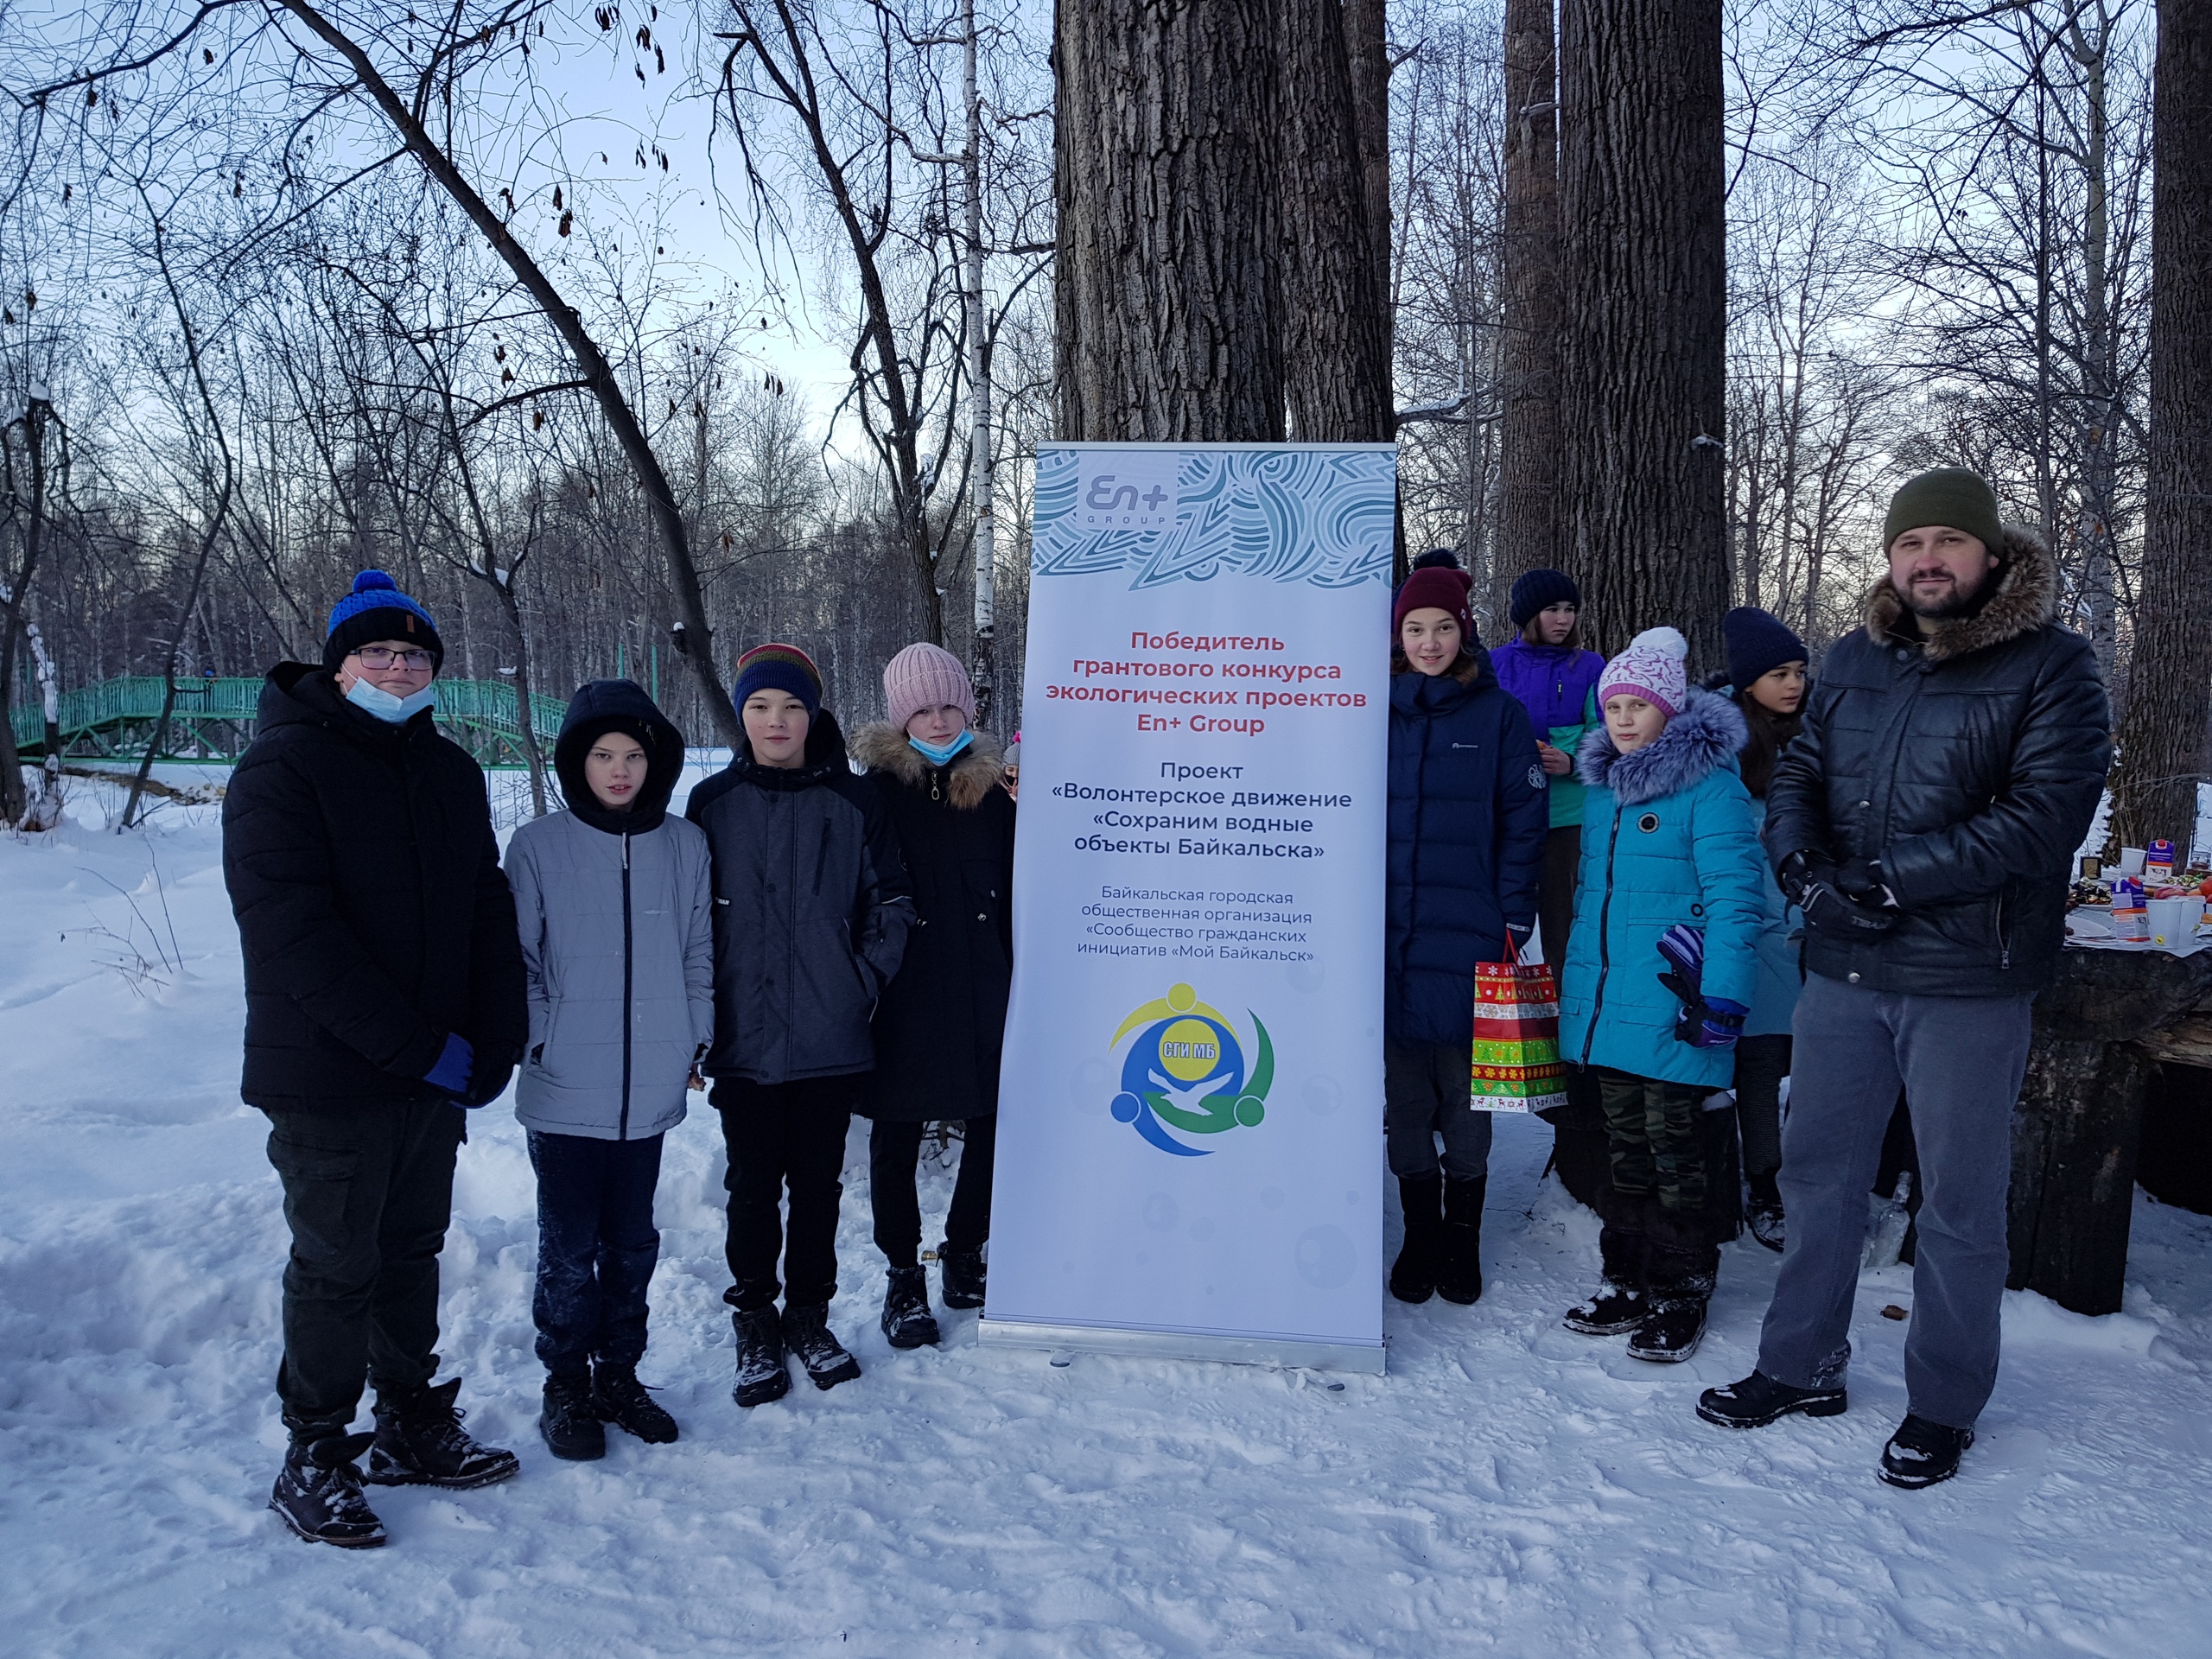 Сохраним водные объекты Байкальска